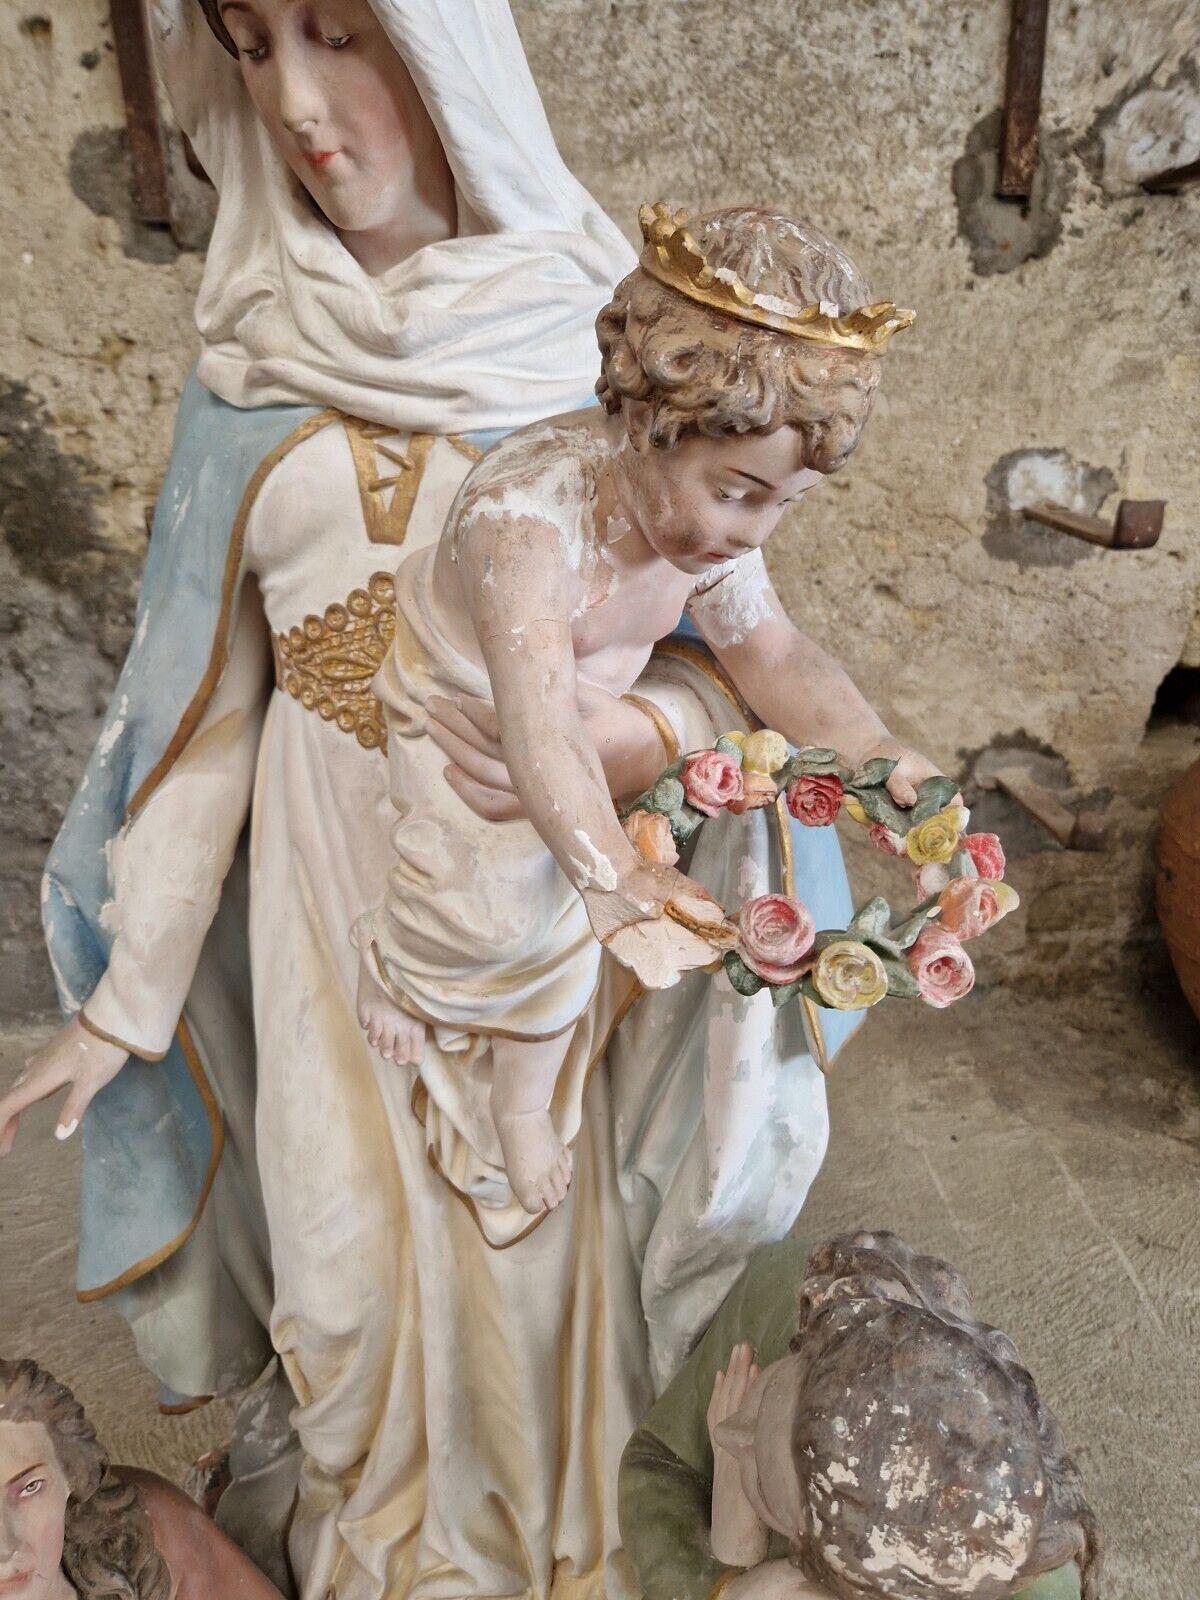 *RARE*
Wir bieten diese fantastische Schrein-Statue aus einer Pariser Church's zum Verkauf an

Diese exquisite Statue der Muttergottes des Fegefeuers ist ein Meisterwerk der religiösen Kunst. Sie wurde in Frankreich während des Historismus von